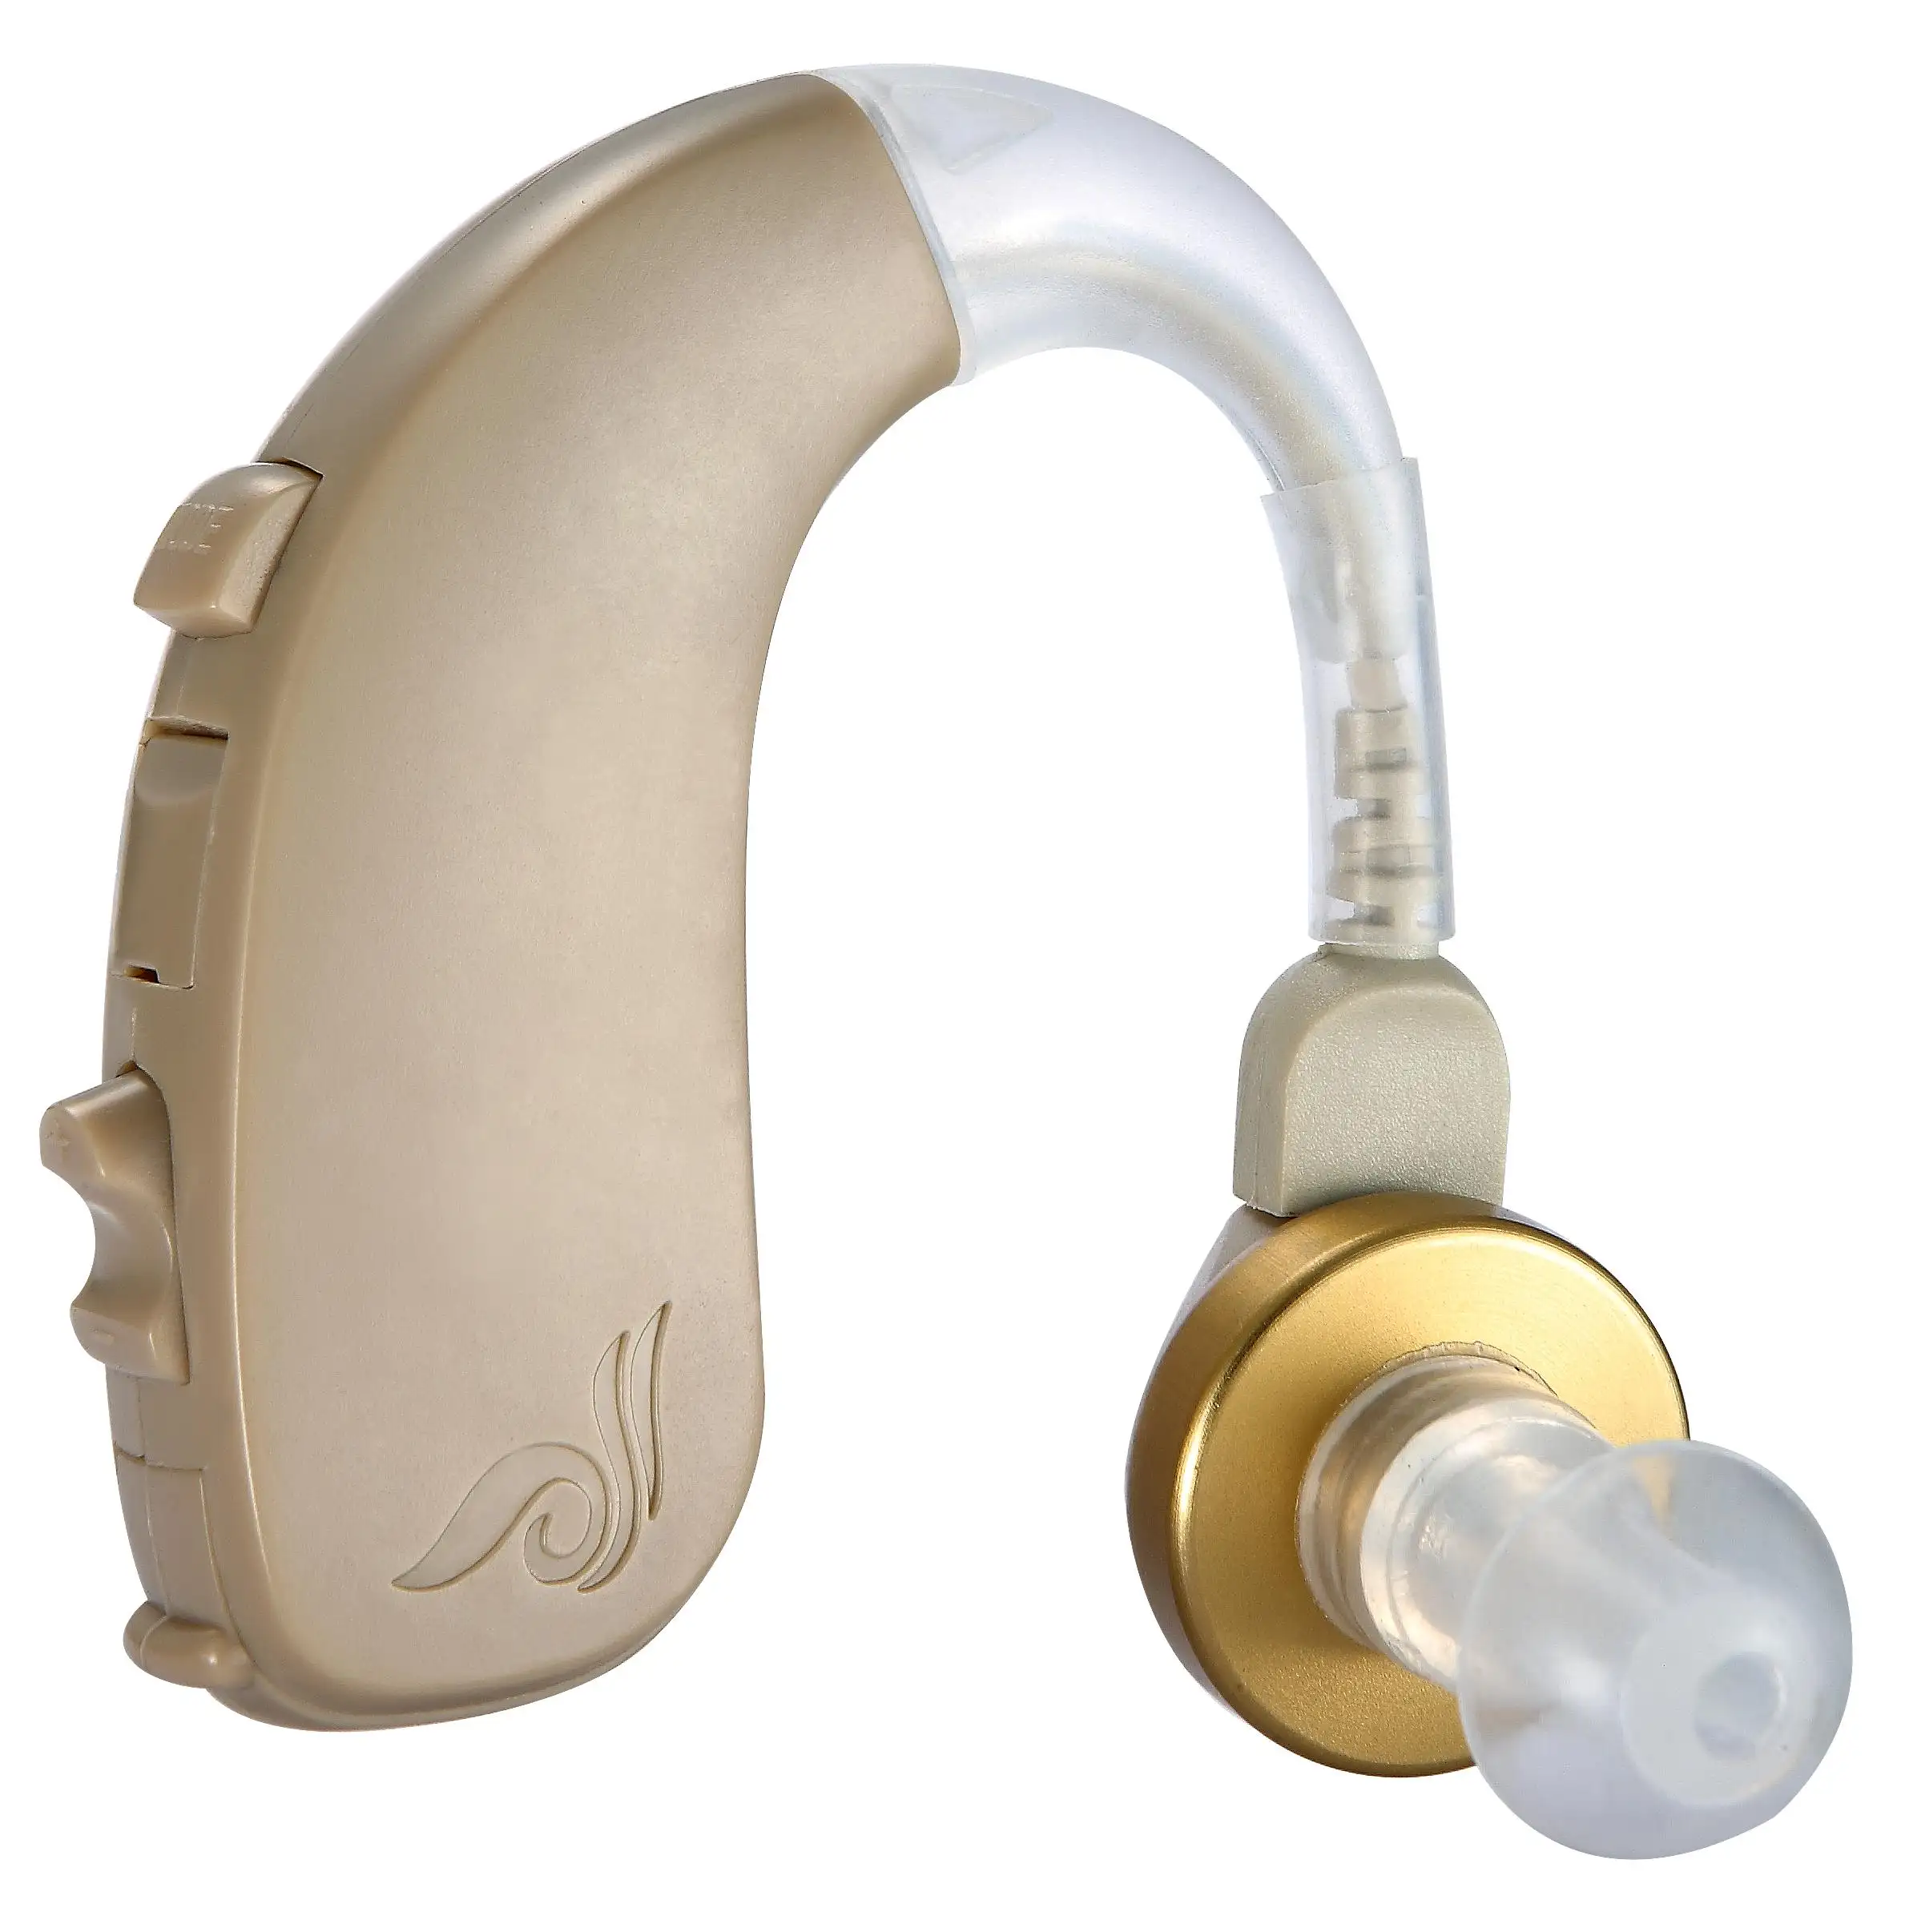 Ear hearing. Слуховой аппарат BTE. Слуховой аппарат Sound Amplifier. Starkey слуховые аппараты. Слуховой аппарат для глухих Отикон.